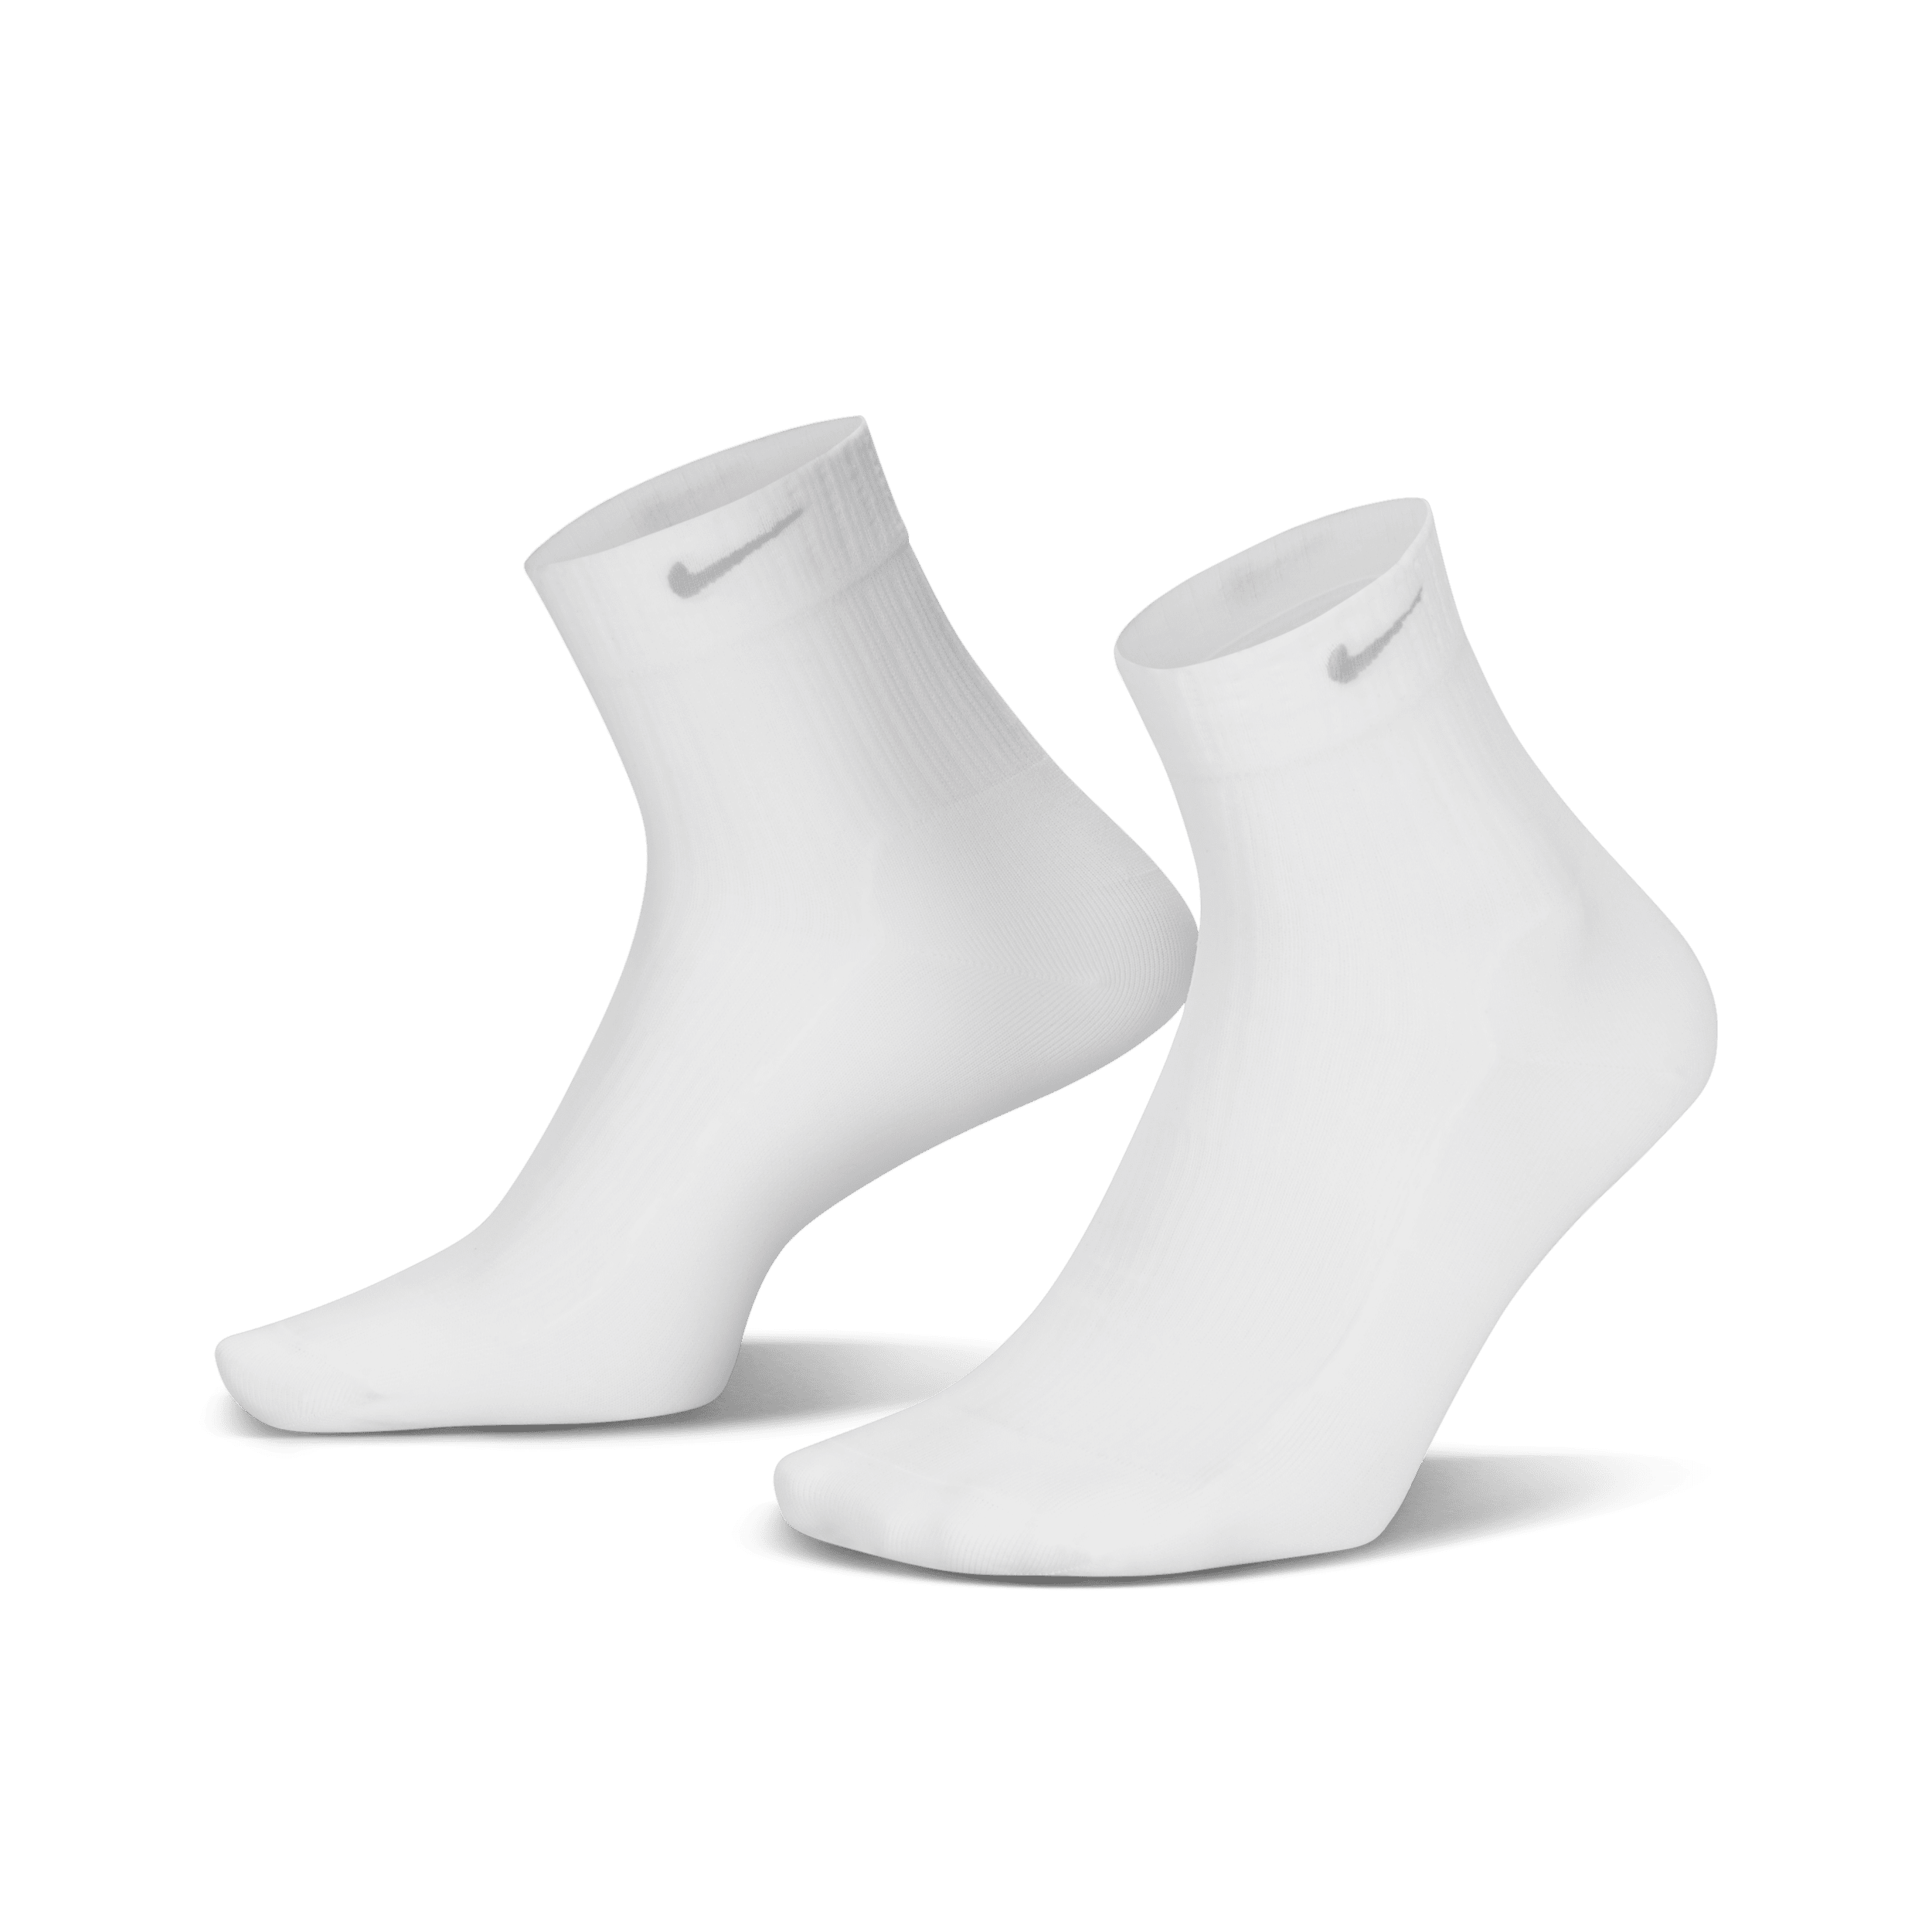 Nike Calcetines hasta el tobillo transparentes (1 par) - Mujer - Blanco